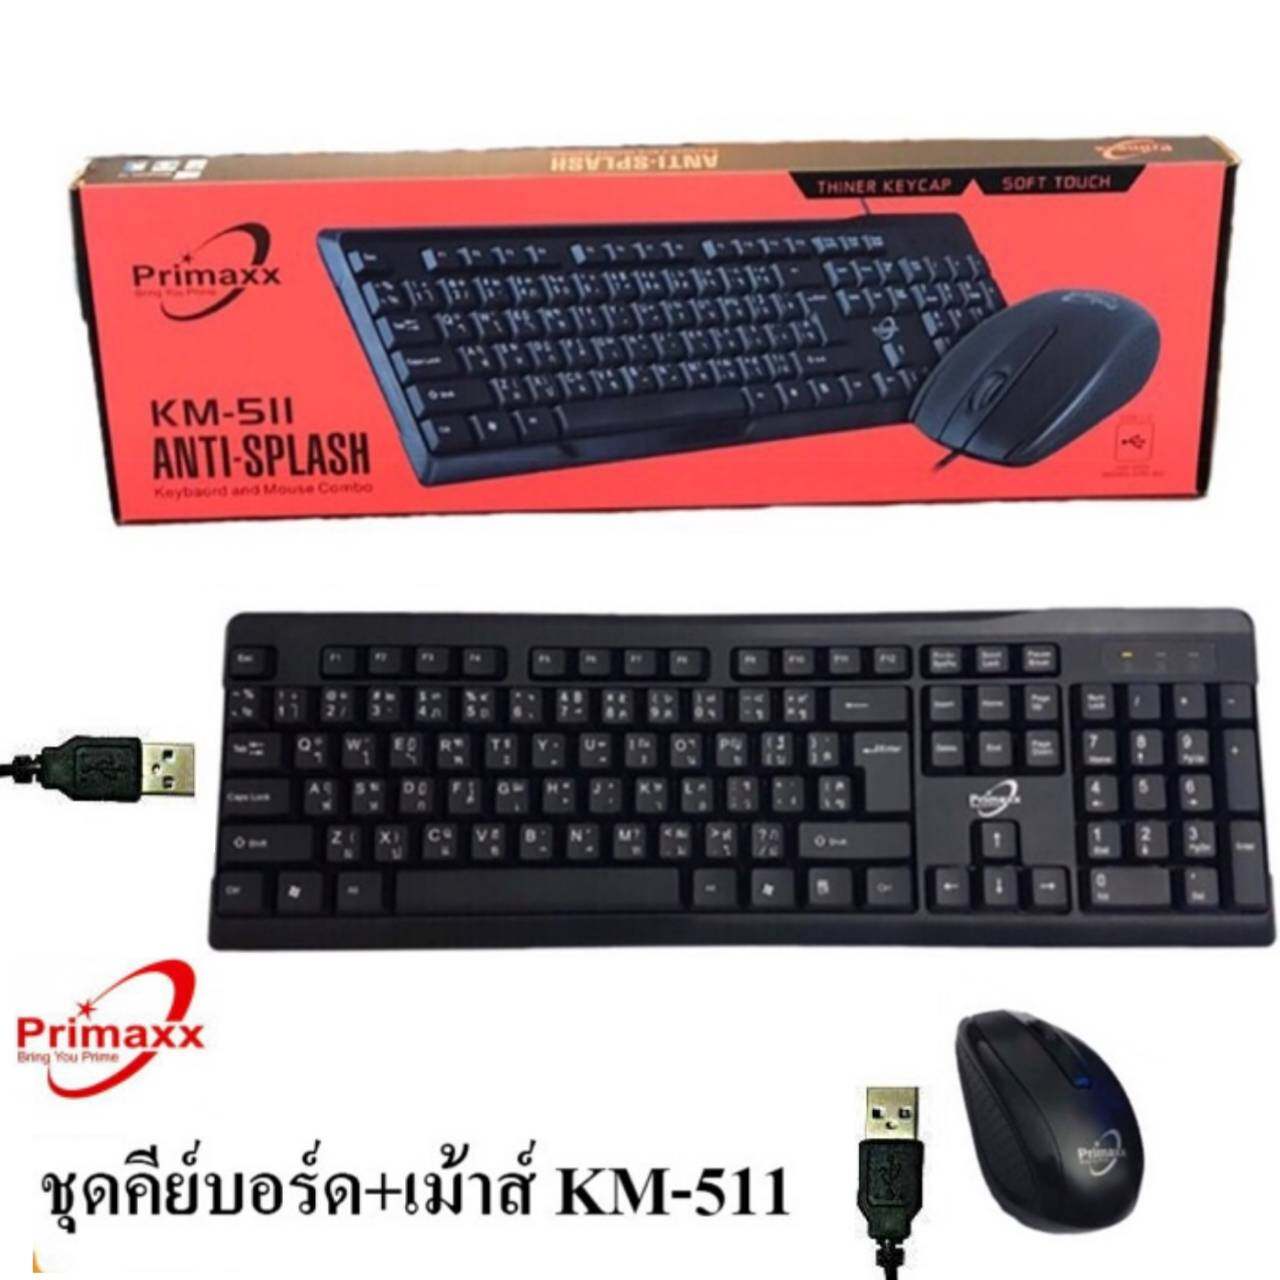 คีย์บอร์ด+เม้าส์ Primaxx KM-511 Keyboard+Mouse (สายUSB)